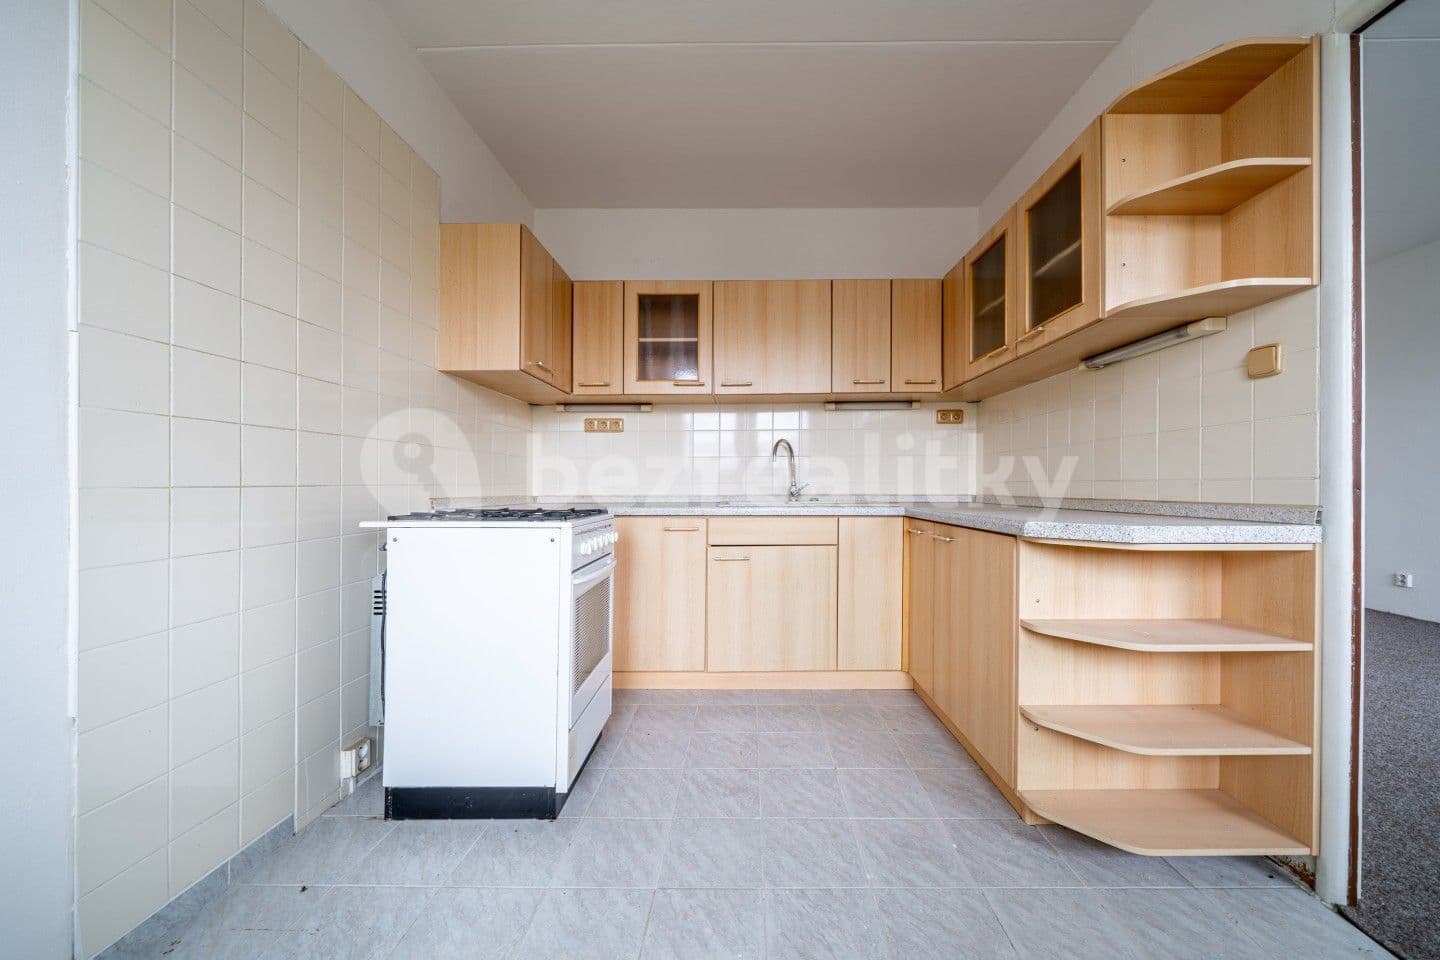 3 bedroom flat for sale, 75 m², Anglická, Kladno, Středočeský Region